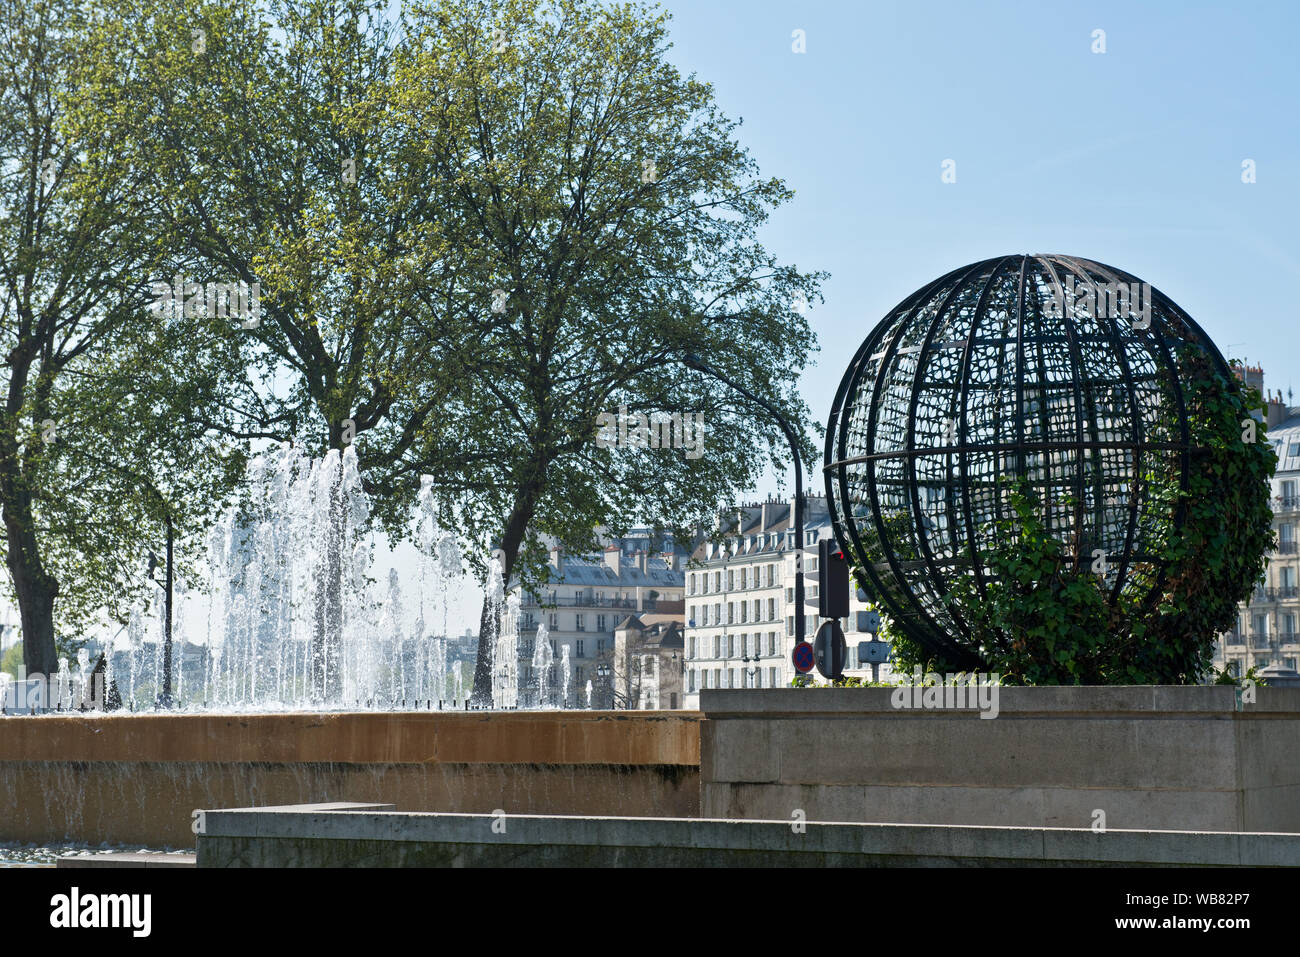 Sfera scultura e fontana nel cortile dell'Hôtel de Ville, Parigi, Francia Foto Stock